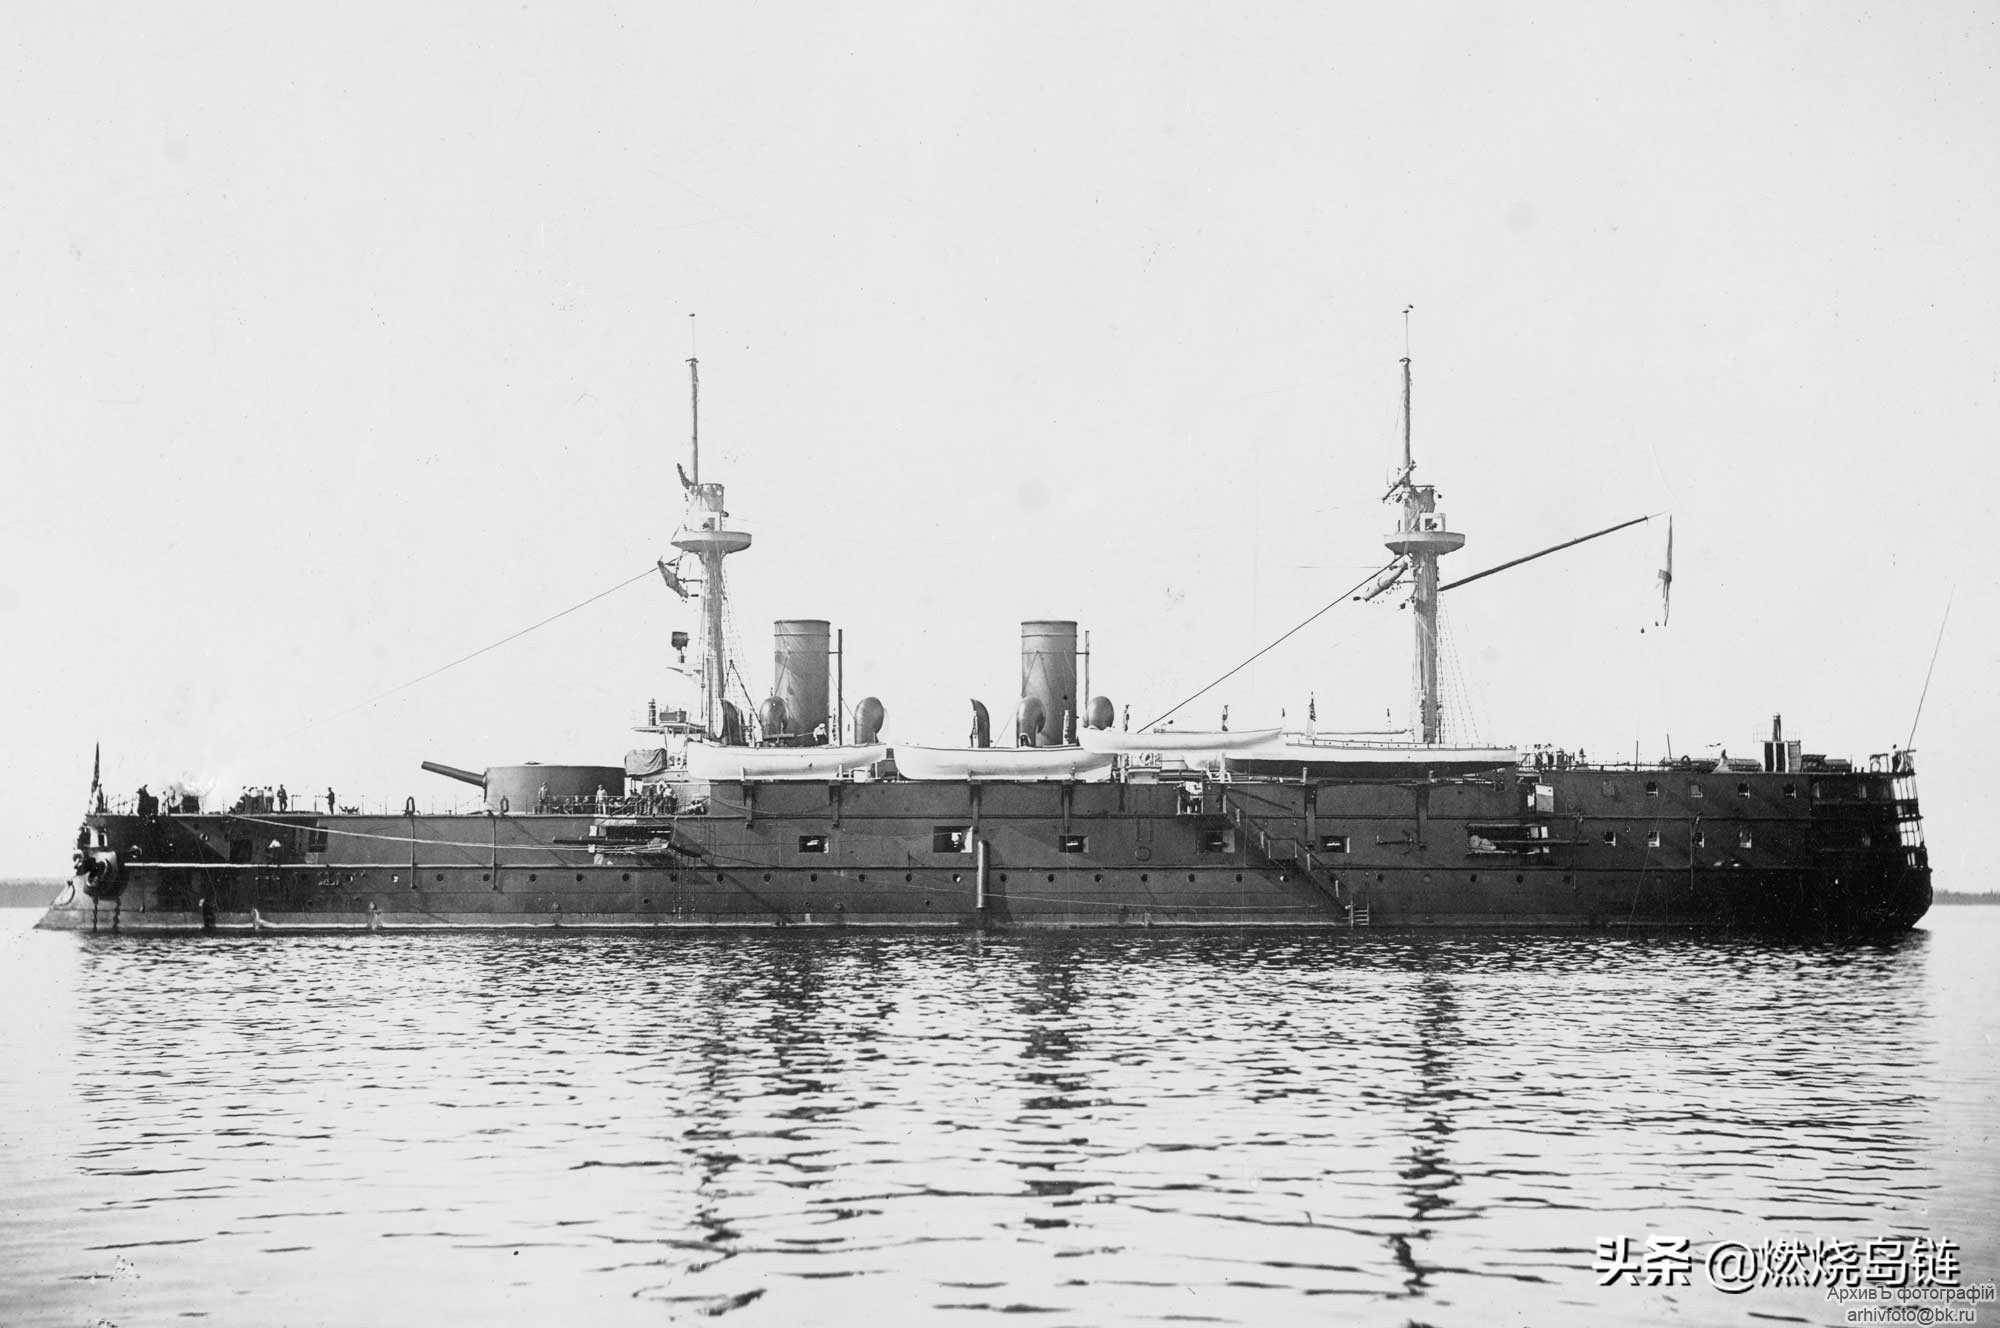 日俄战争中沙俄第三太平洋舰队旗舰尼古拉一世号岸防战列舰